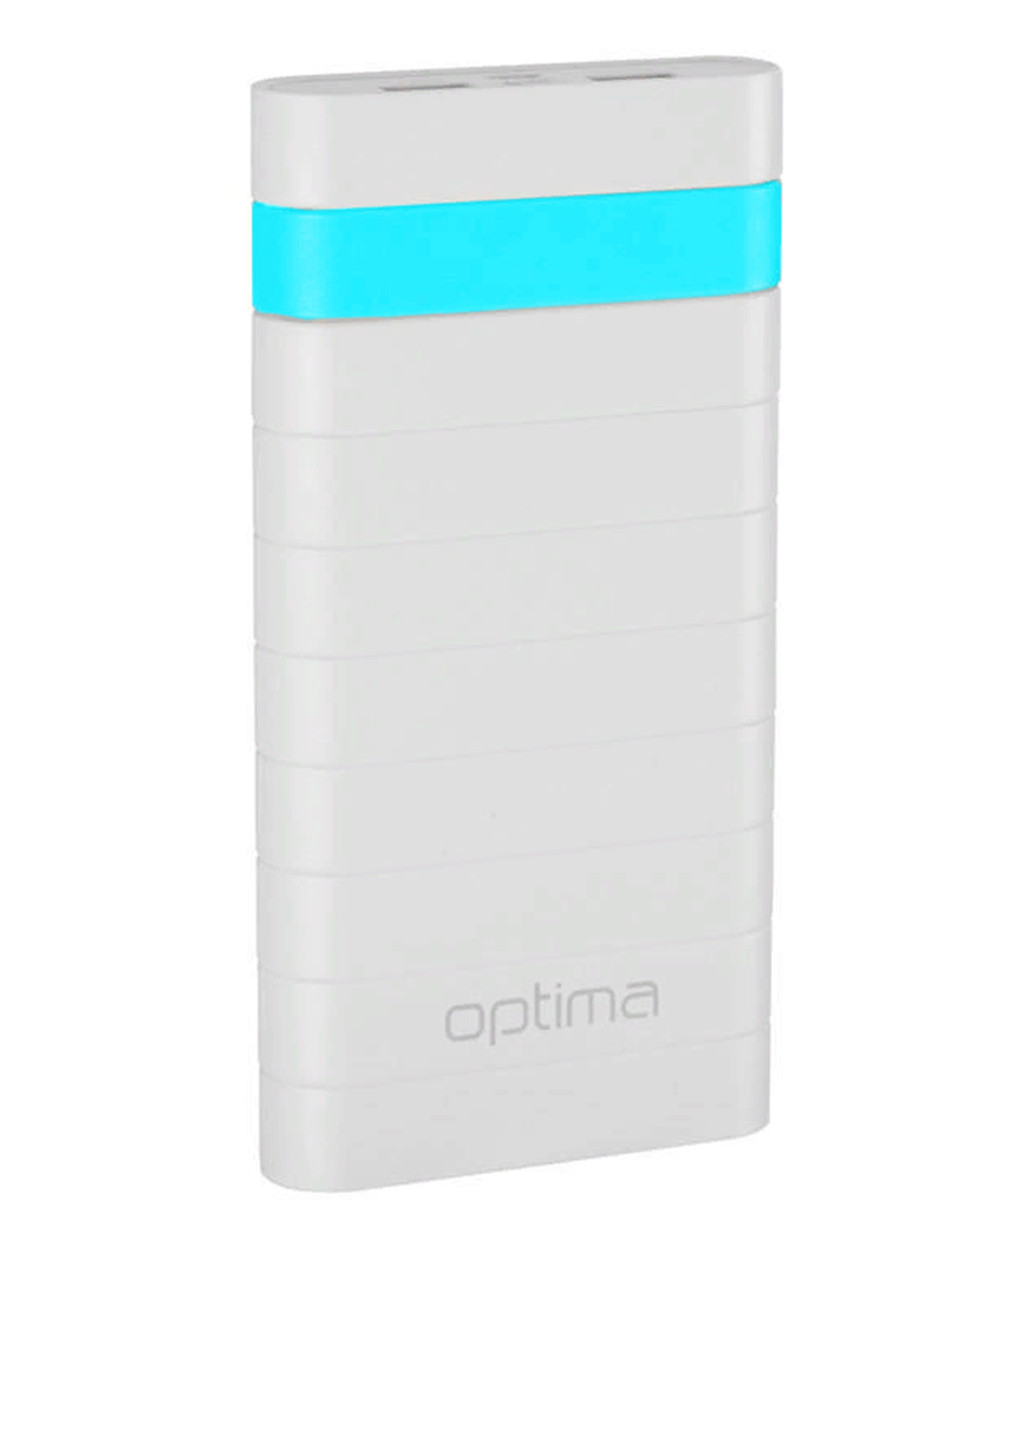 Універсальна батарея Promo Series 20000mAh White / Blue Optima op-20 (130135467)